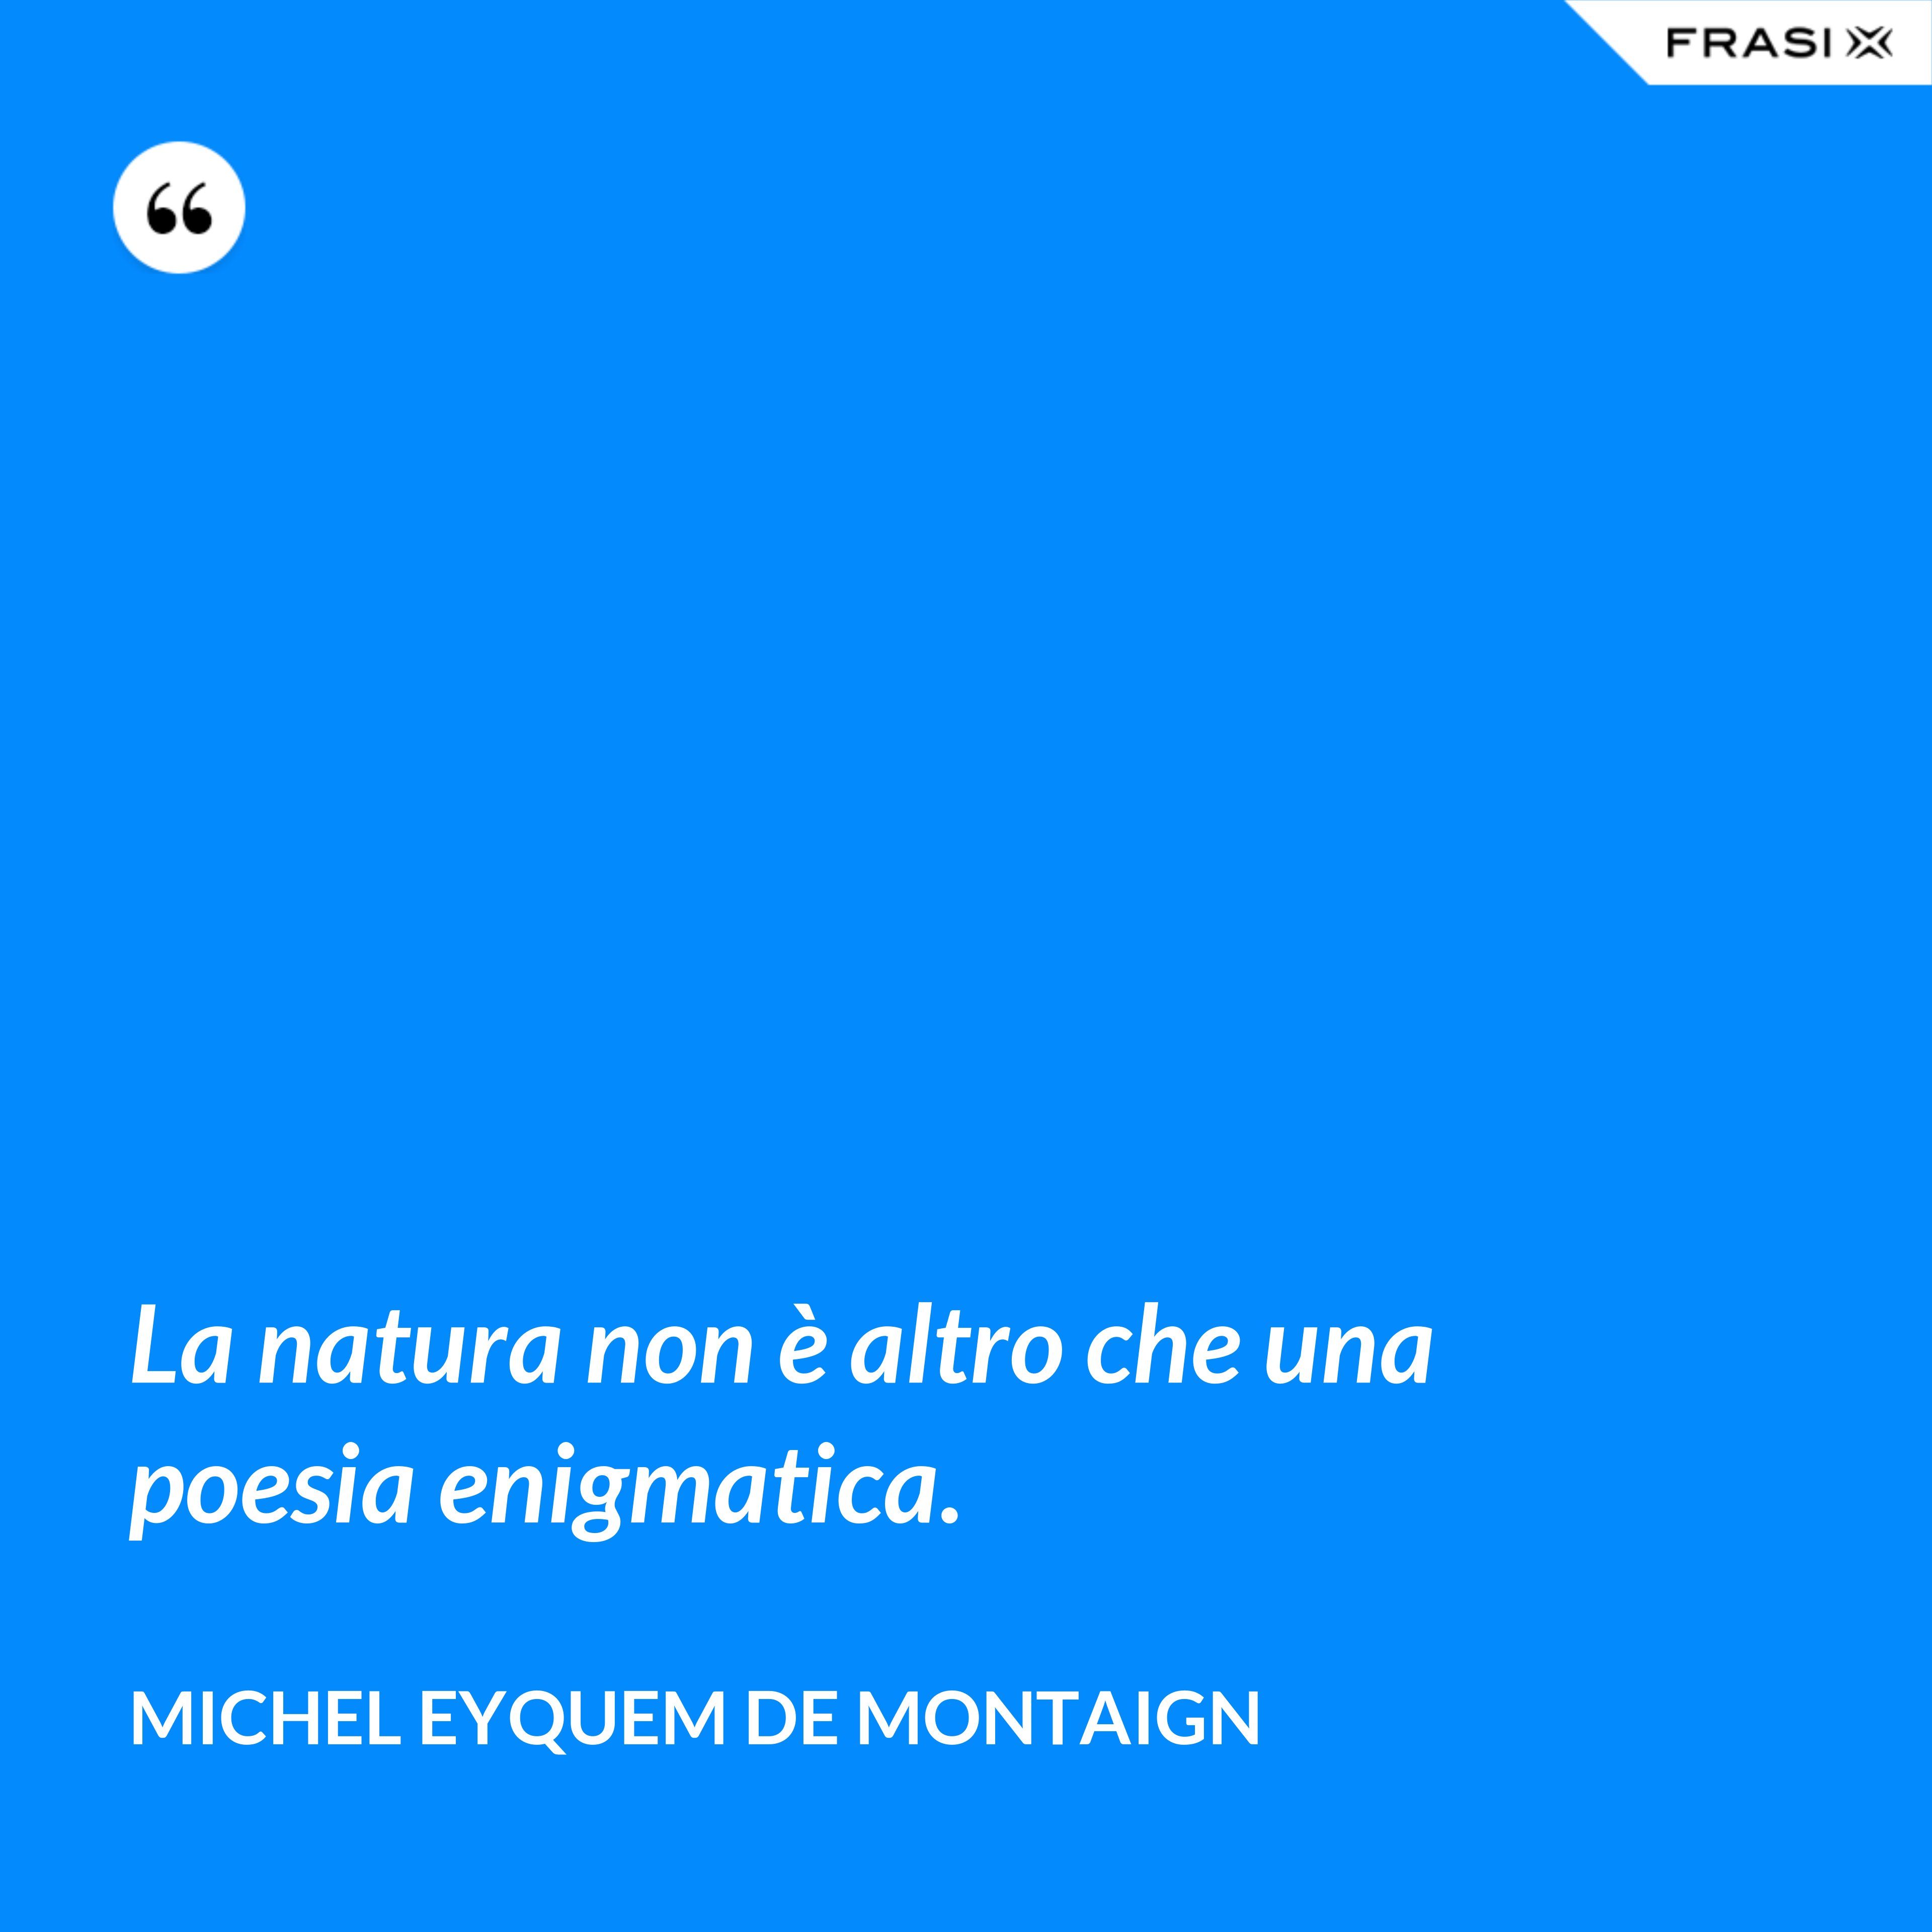 La natura non è altro che una poesia enigmatica. - Michel Eyquem de Montaign